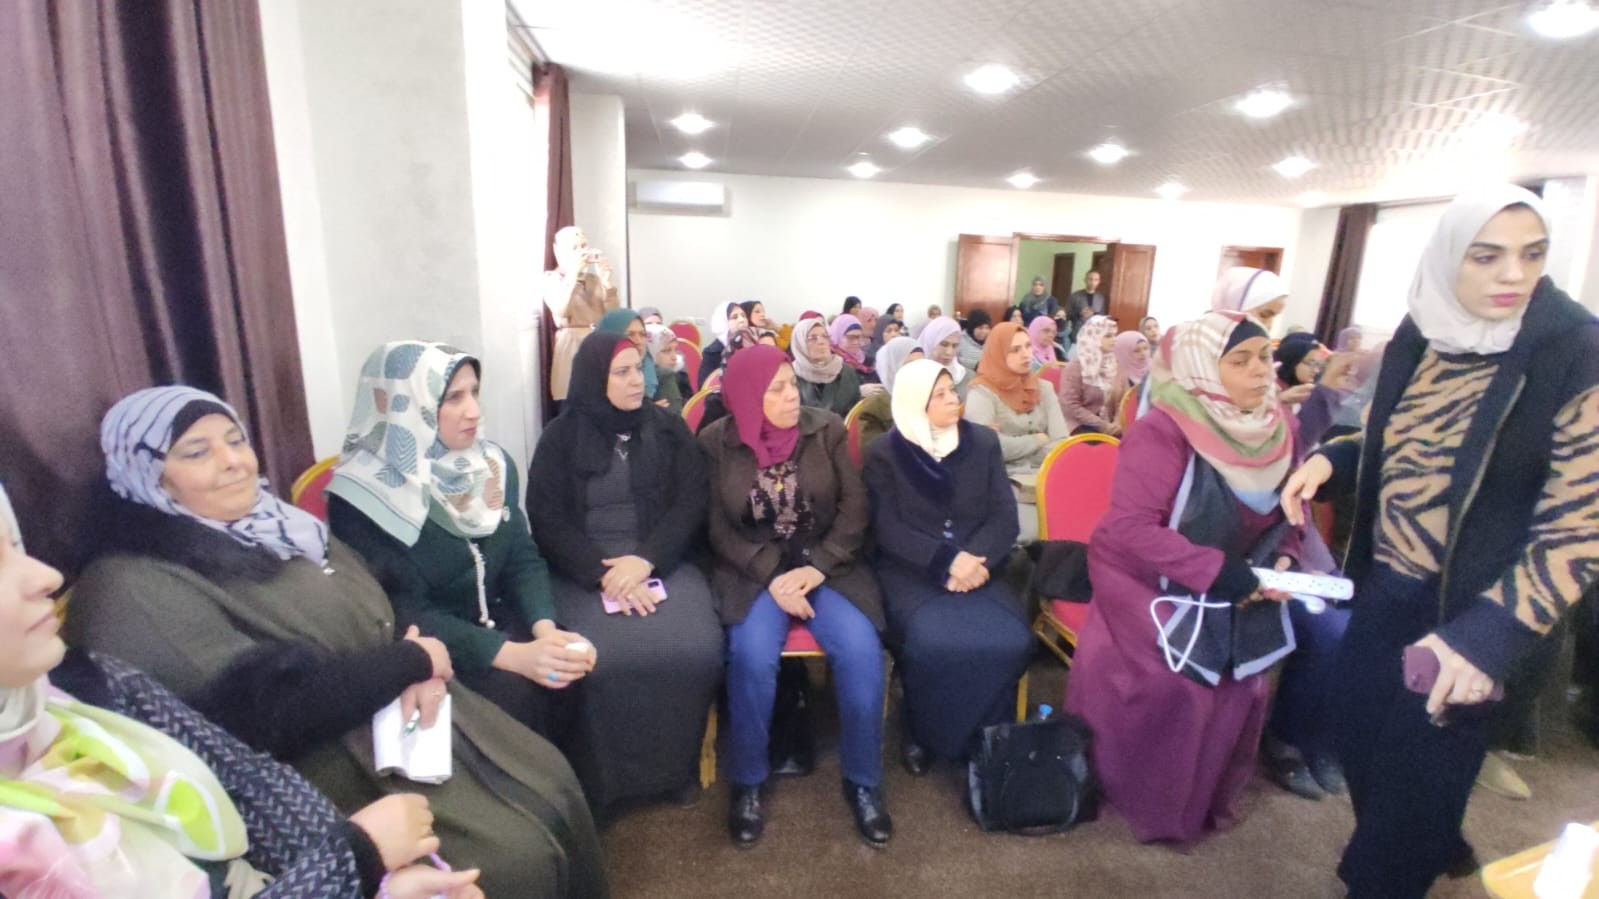 الاتحاد العام للمرأة الفلسطينية في المحافظات الجنوبية وفي الضفة الغربية يلتقيان في سلسلة اجتماعات في قطاع غزة 9.jpg